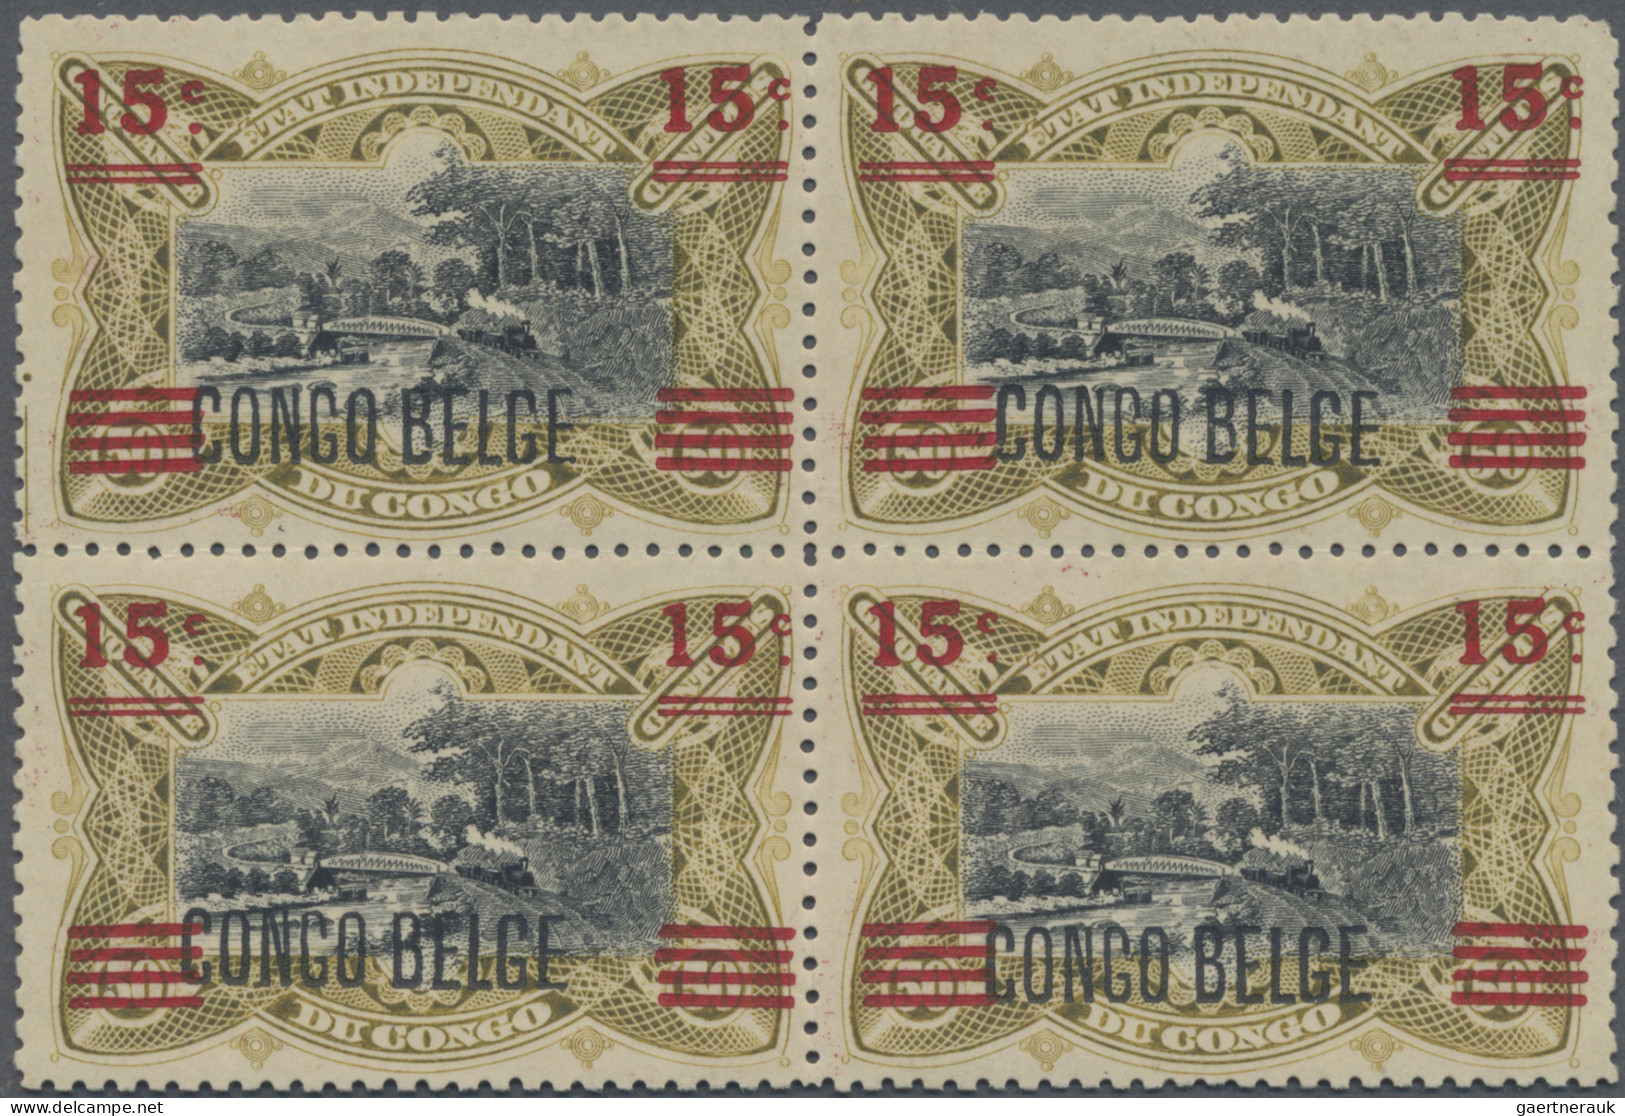 Belgian-Congo: 1921: Block Of Four 15 C. On 50 C. With "CONGO BELGE", Mint Never - Ongebruikt